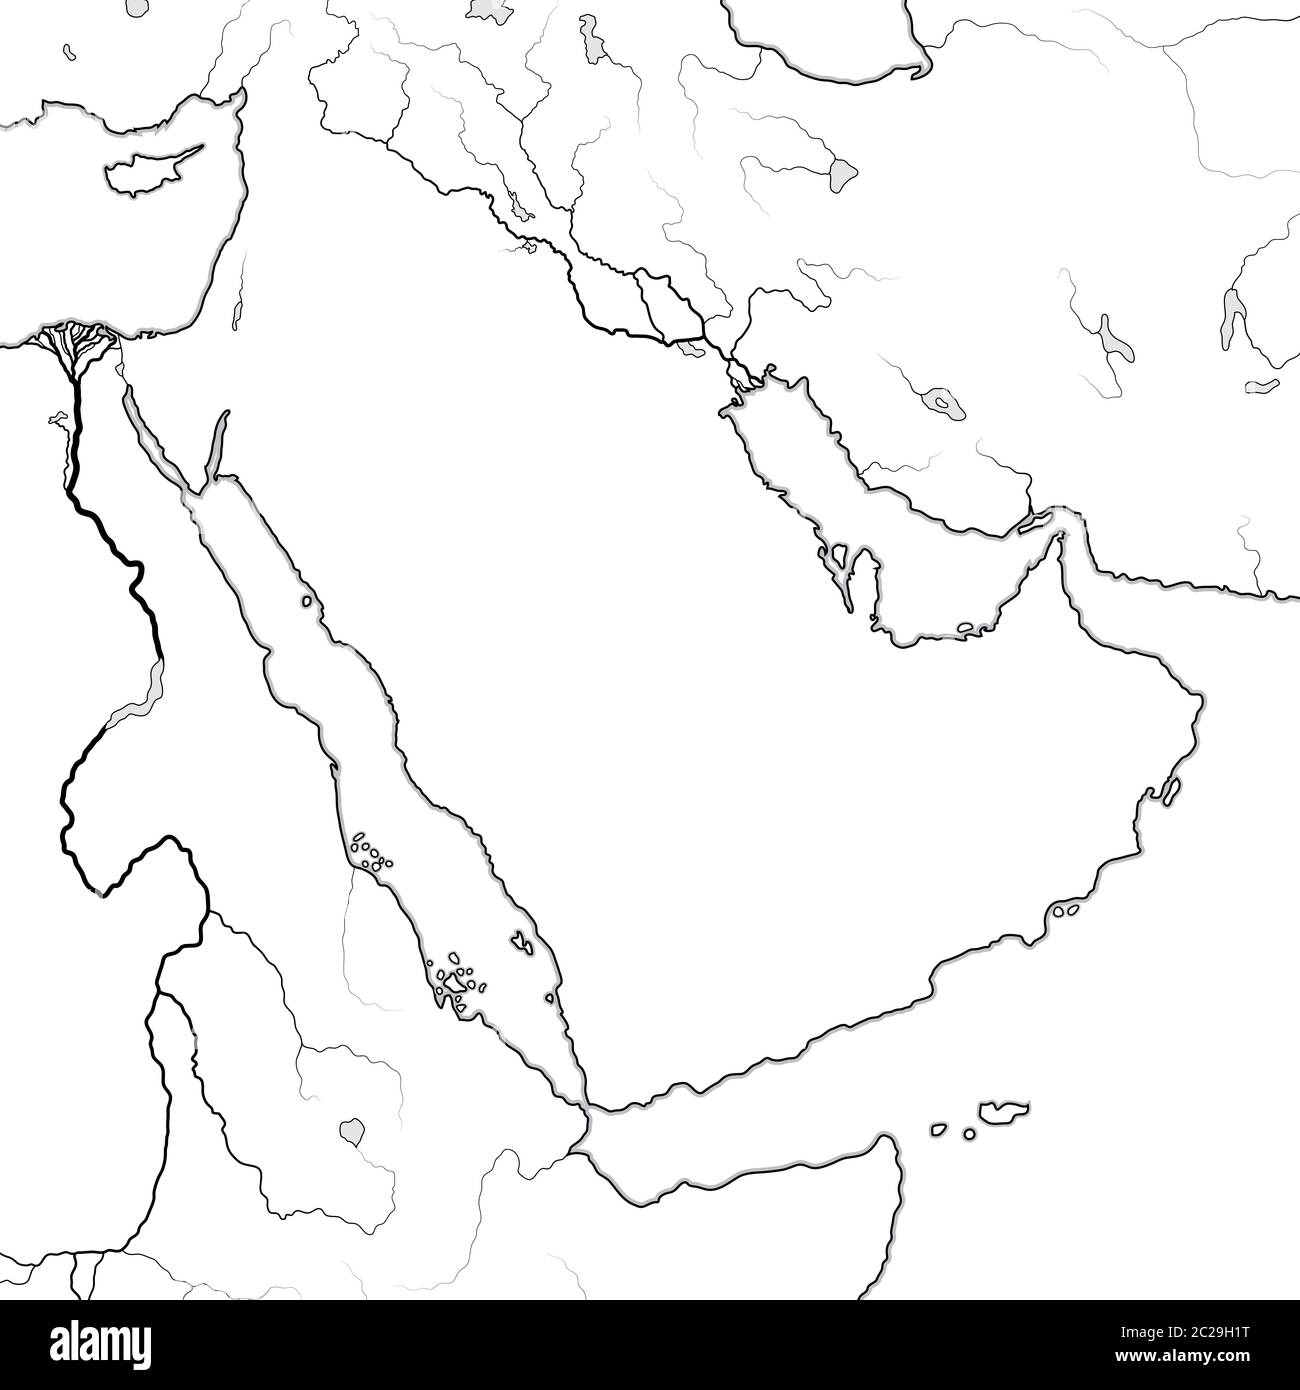 Carte du monde de LA PÉNINSULE ARABE : Moyen-Orient, Arabie Saoudite, Irak, Golfe persique, Émirats. Carte géographique. Banque D'Images